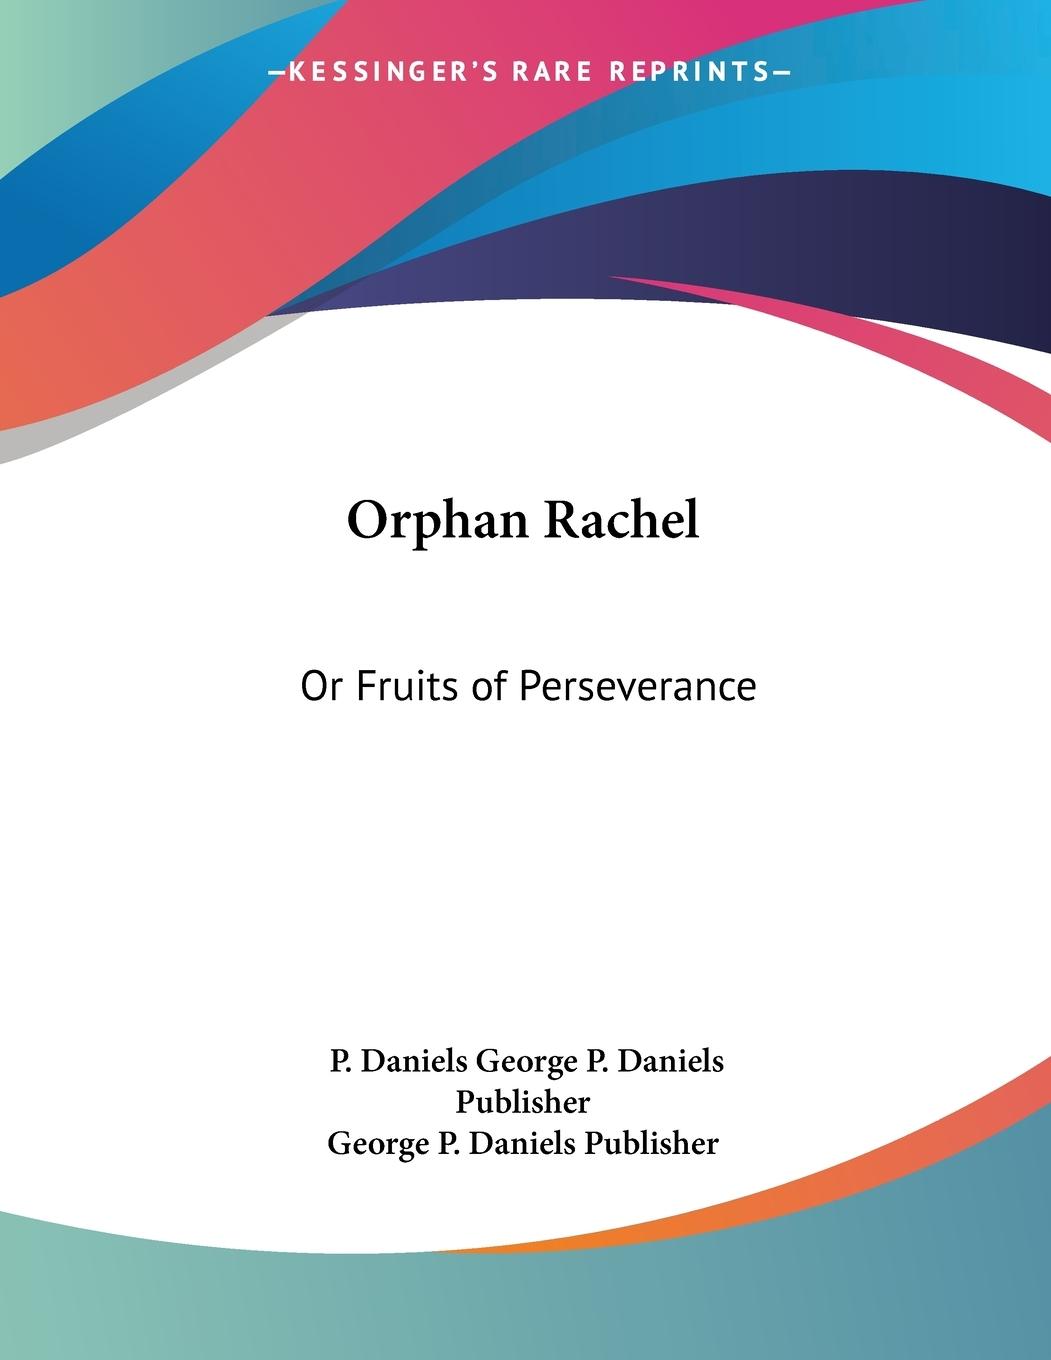 Orphan Rachel - George P. Daniels Publisher, P. Daniels George P. Daniels Publisher